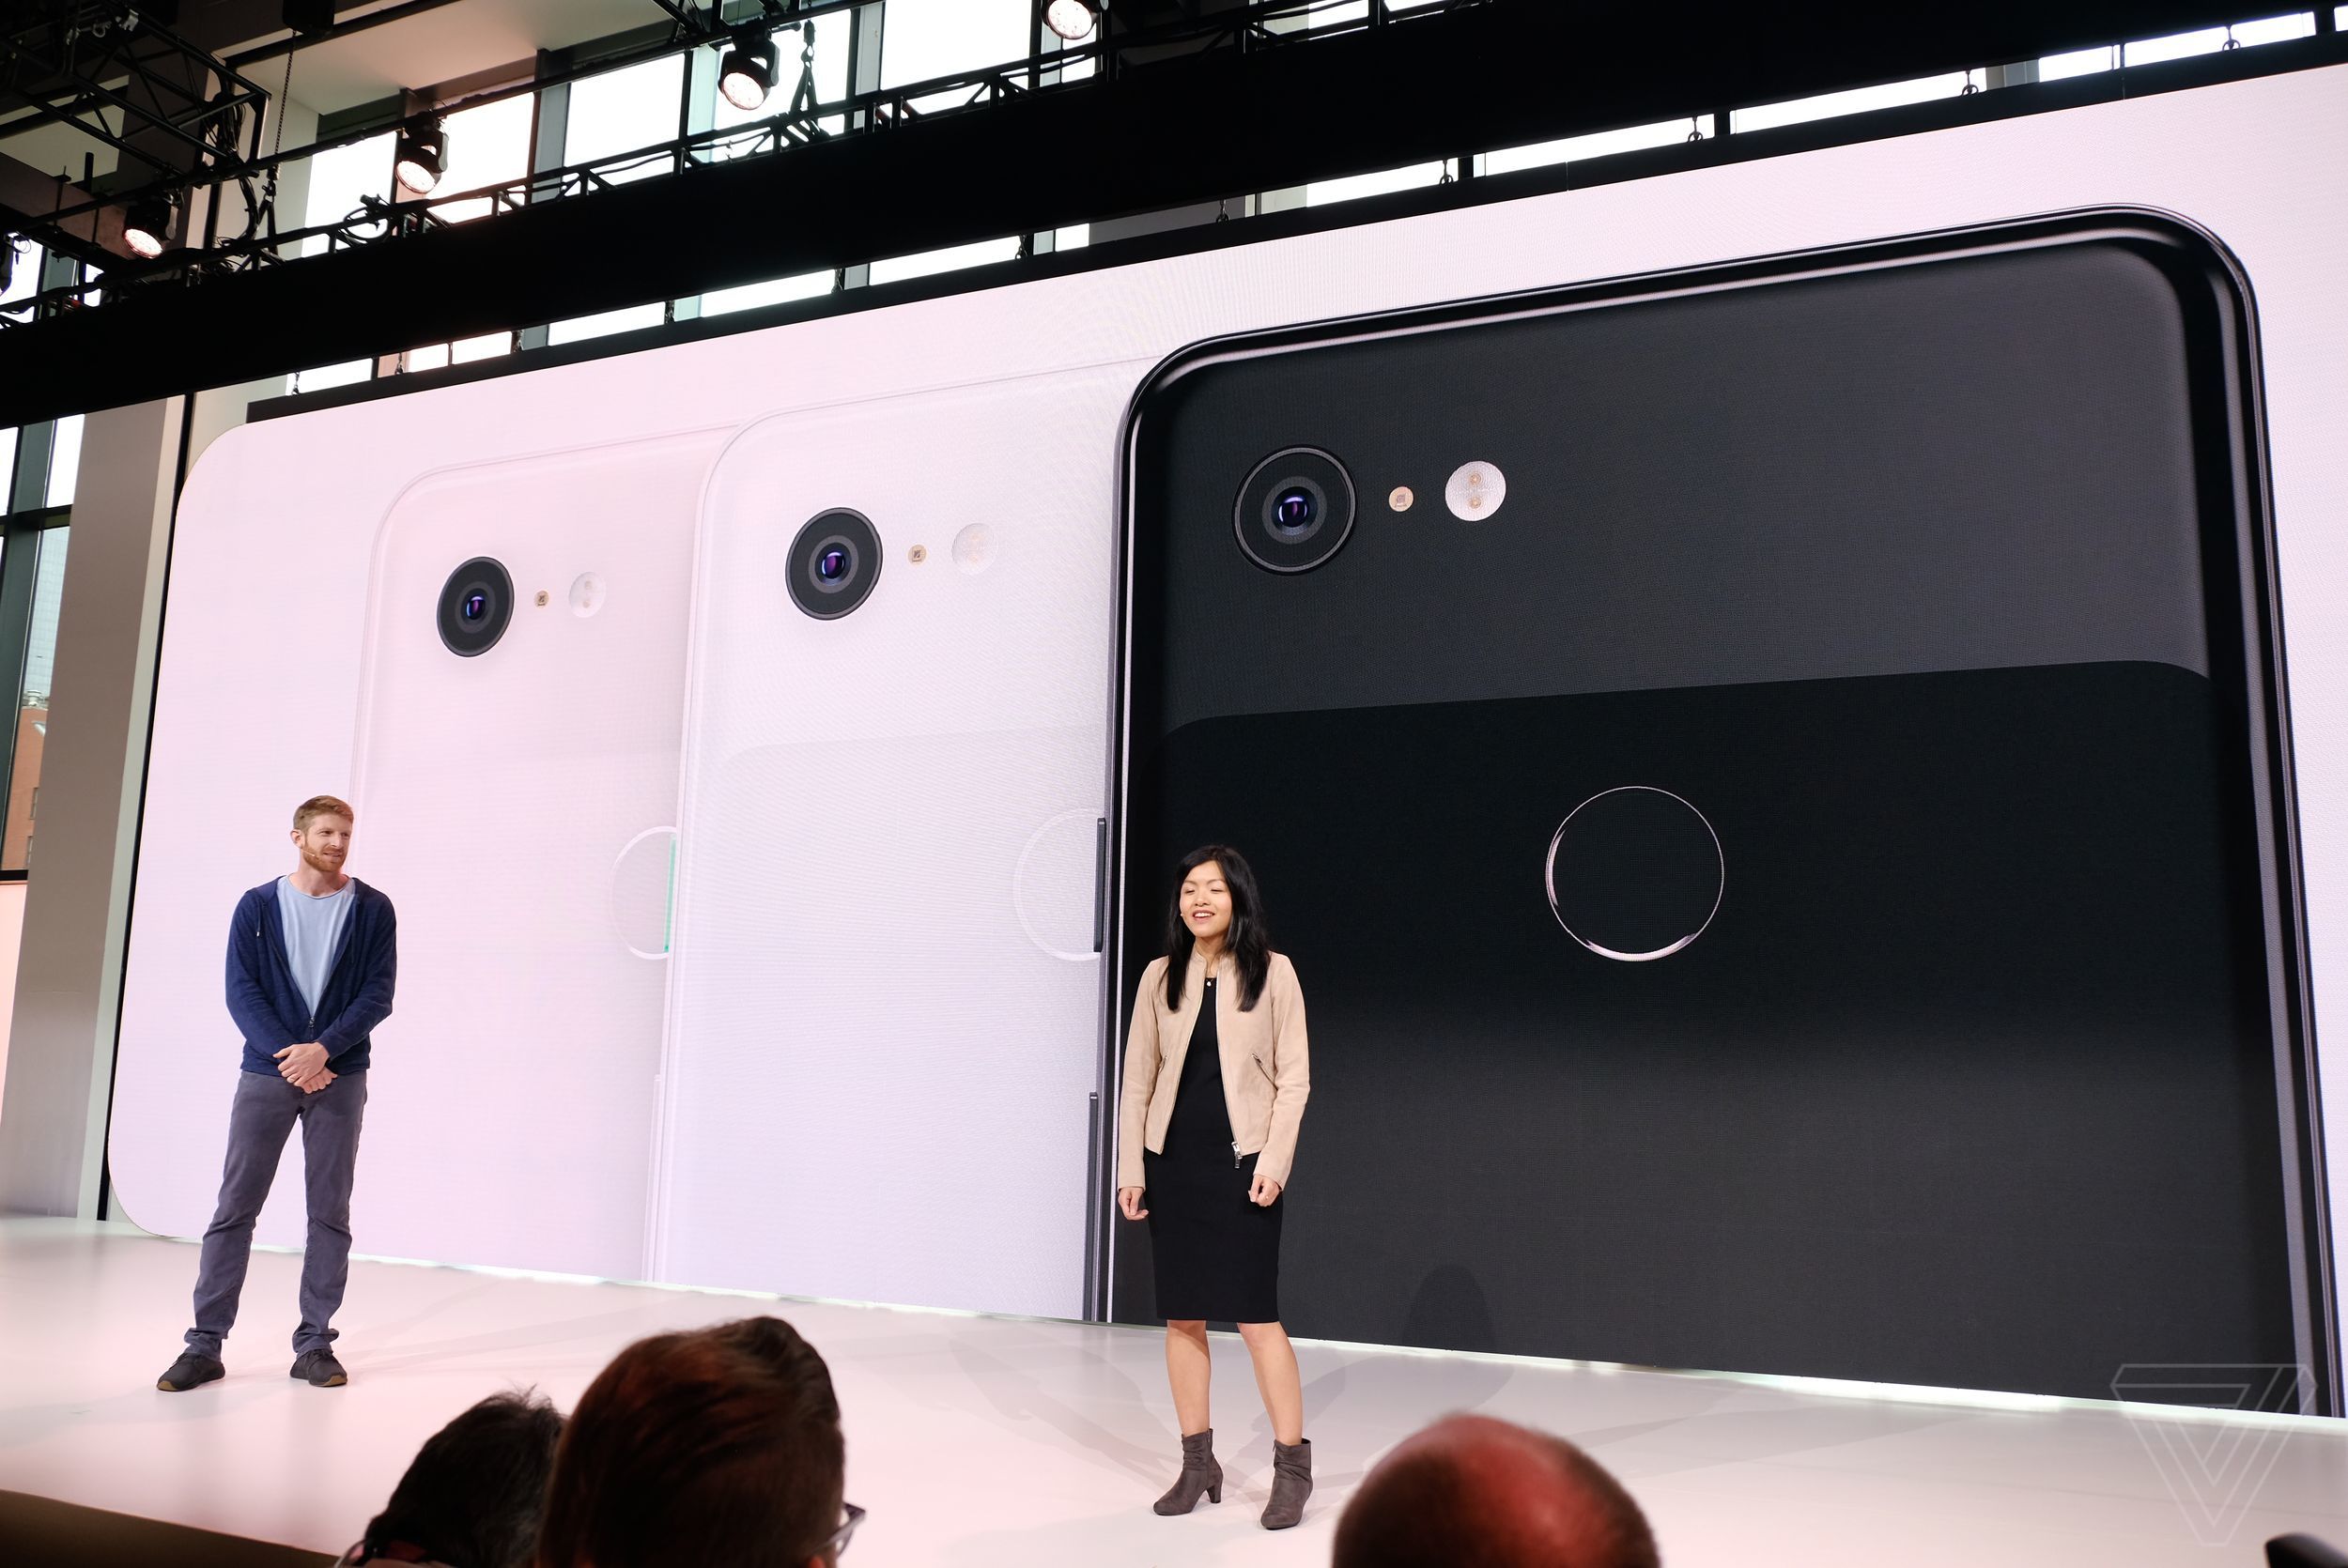 Google Pixel 3 và
Pixel 3 XL chính thức được ra mắt với Snapdragon 845, 4GB
RAM, camera ngon hơn